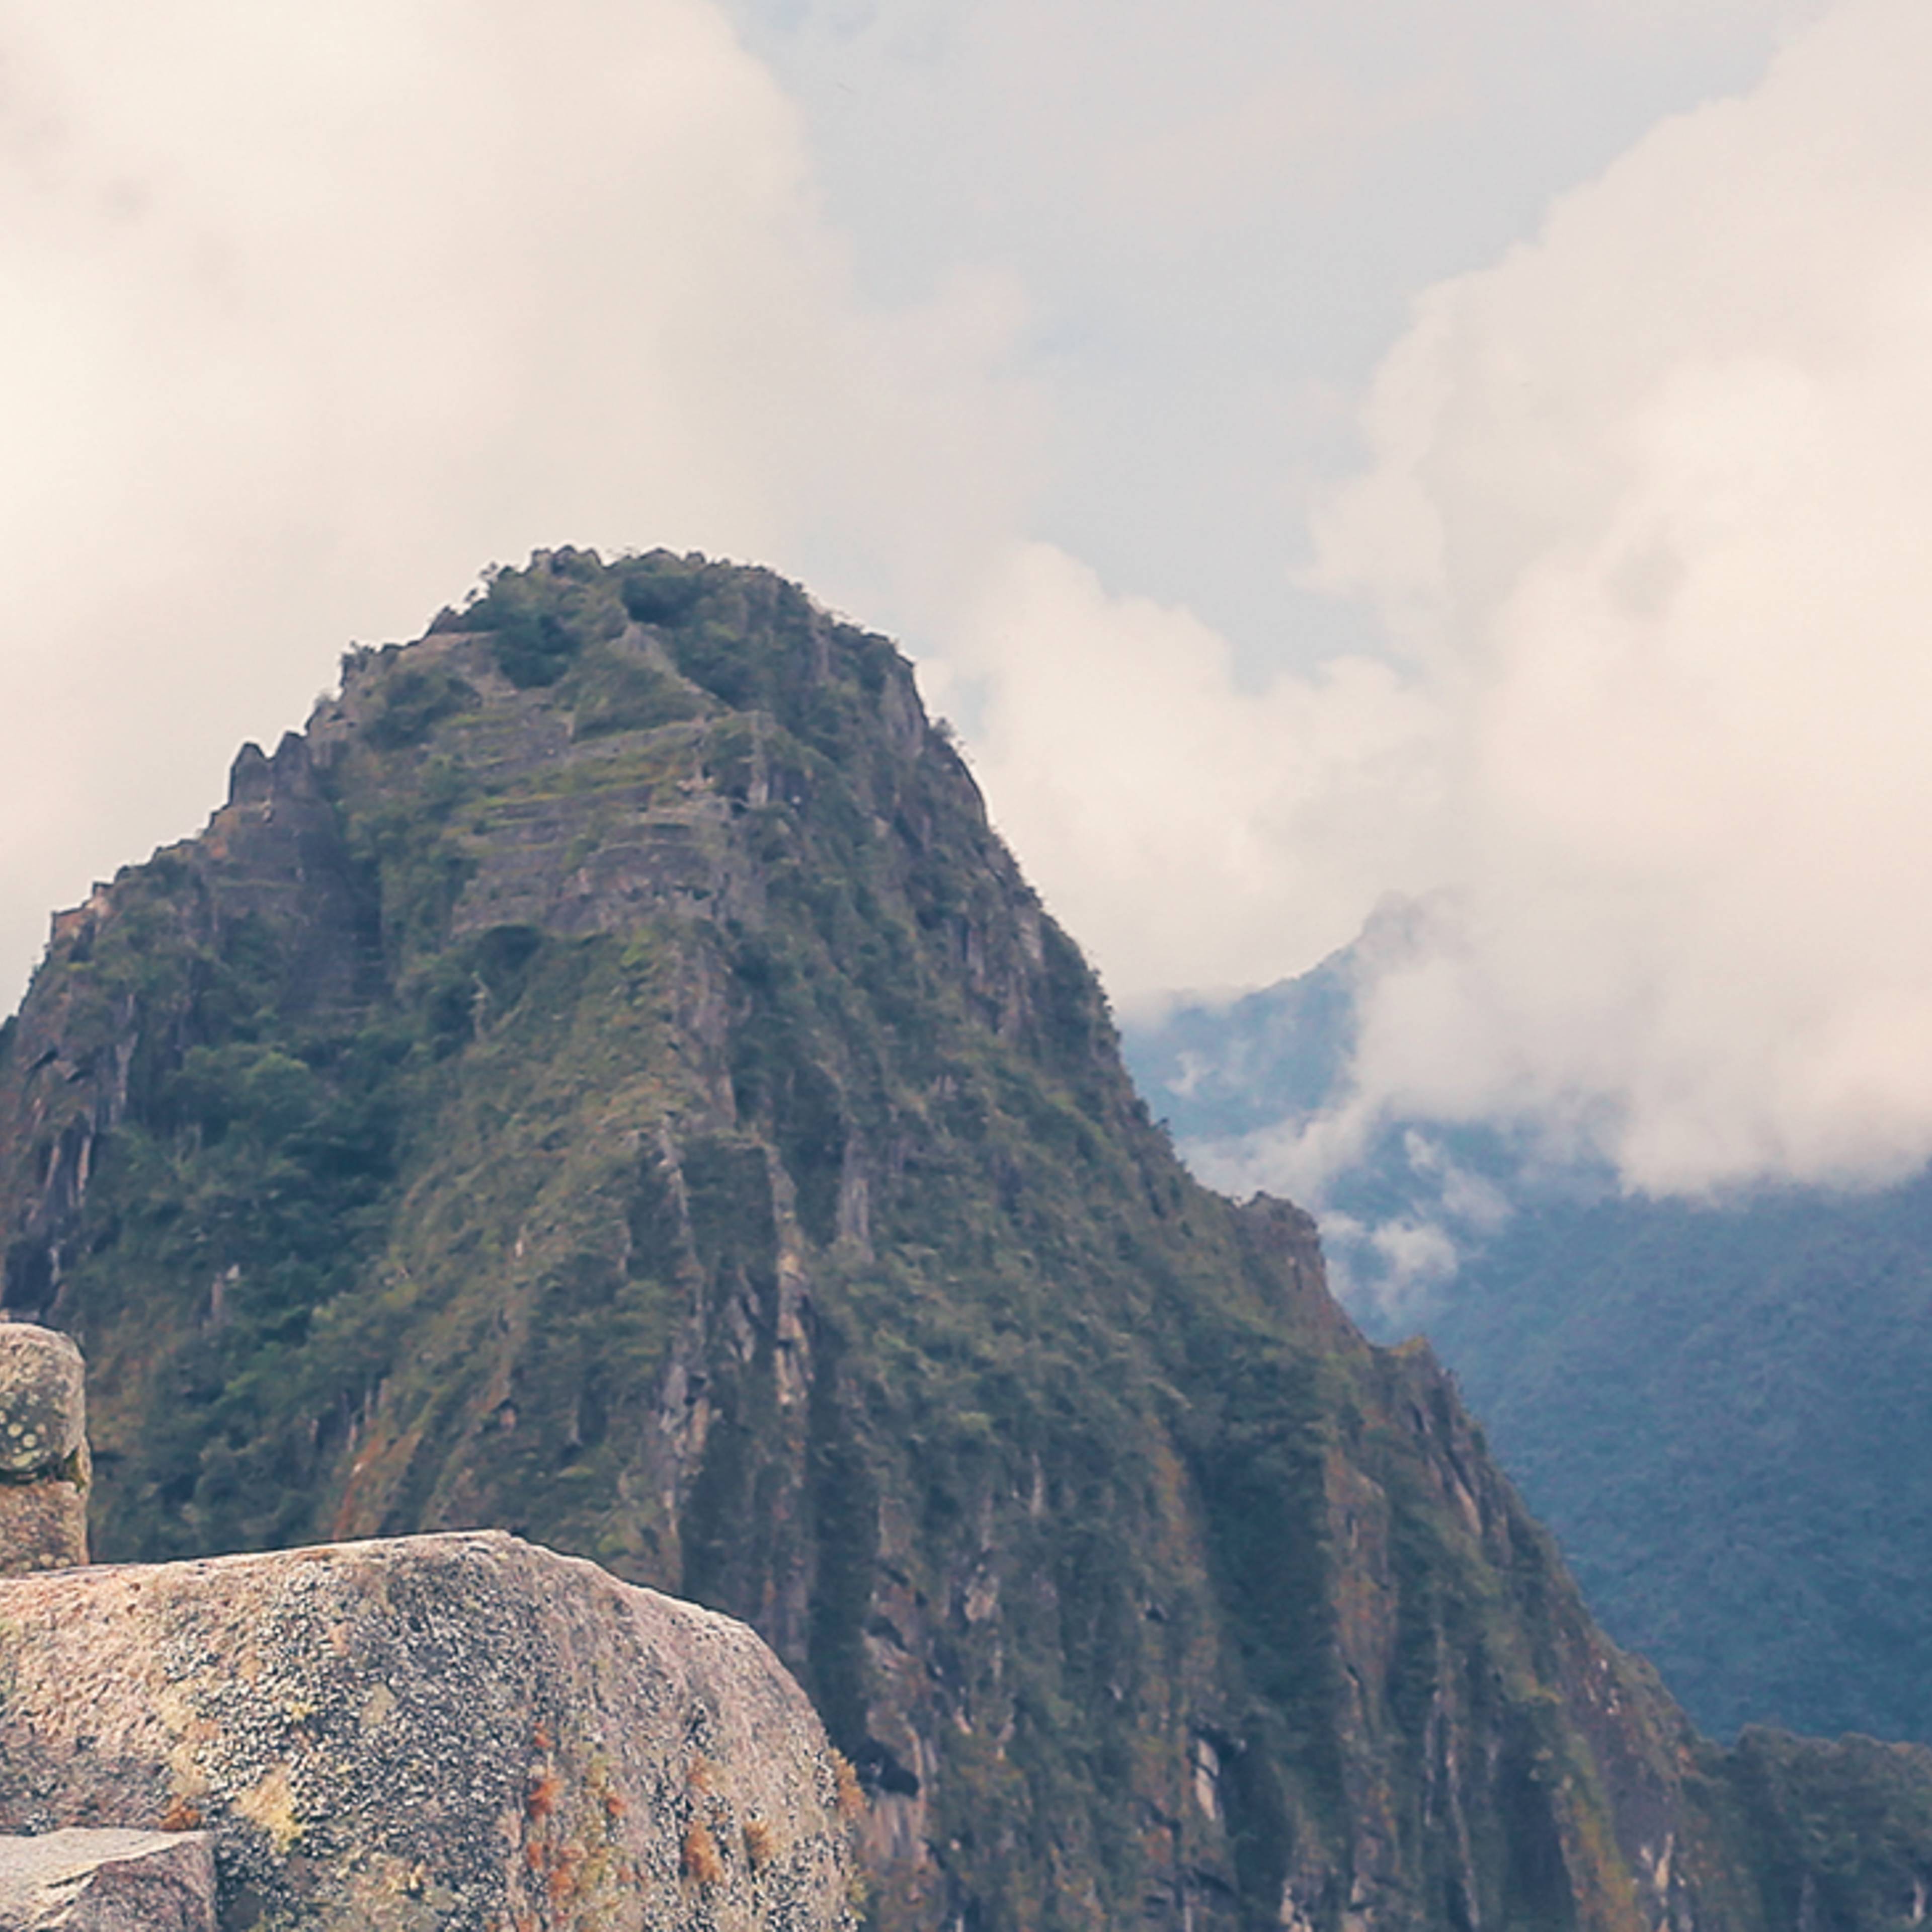 Crea il tuo viaggio in Perù in autunno, 100% su misura